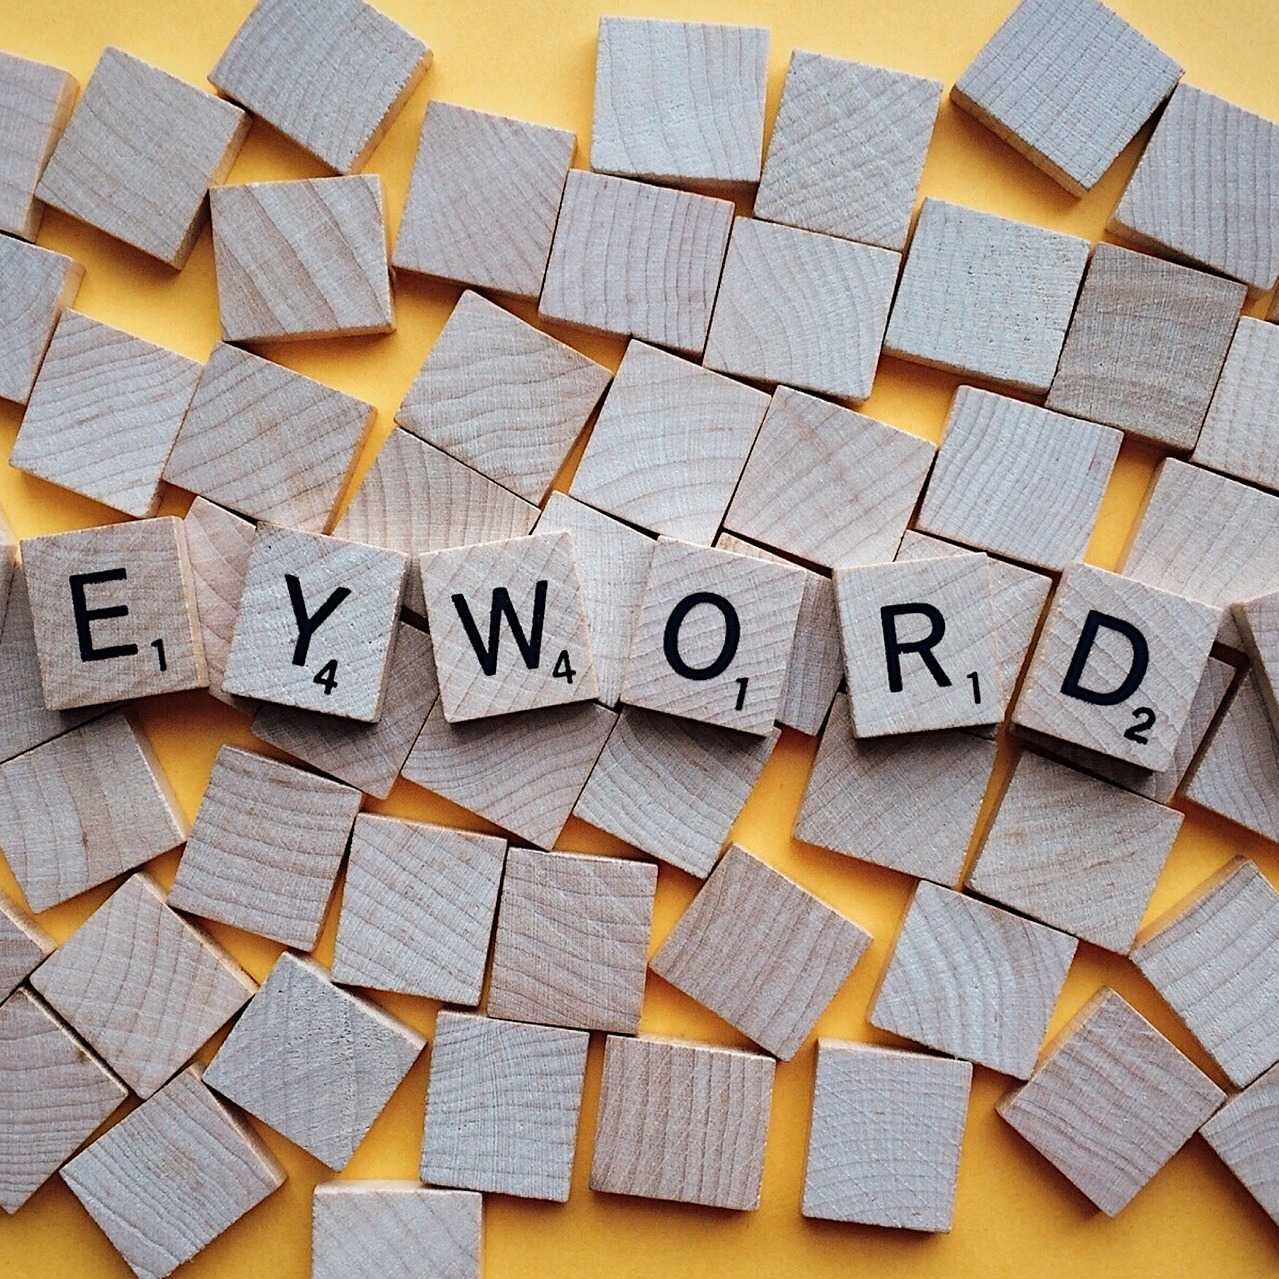 अंग्रेजी शब्द कीवर्ड का अर्थ है एक या एक से अधिक शब्द जो उपयोगकर्ता अपनी रुचि की वेबसाइटों को खोजने और परामर्श करने के लिए खोज इंजन में लिखते हैं